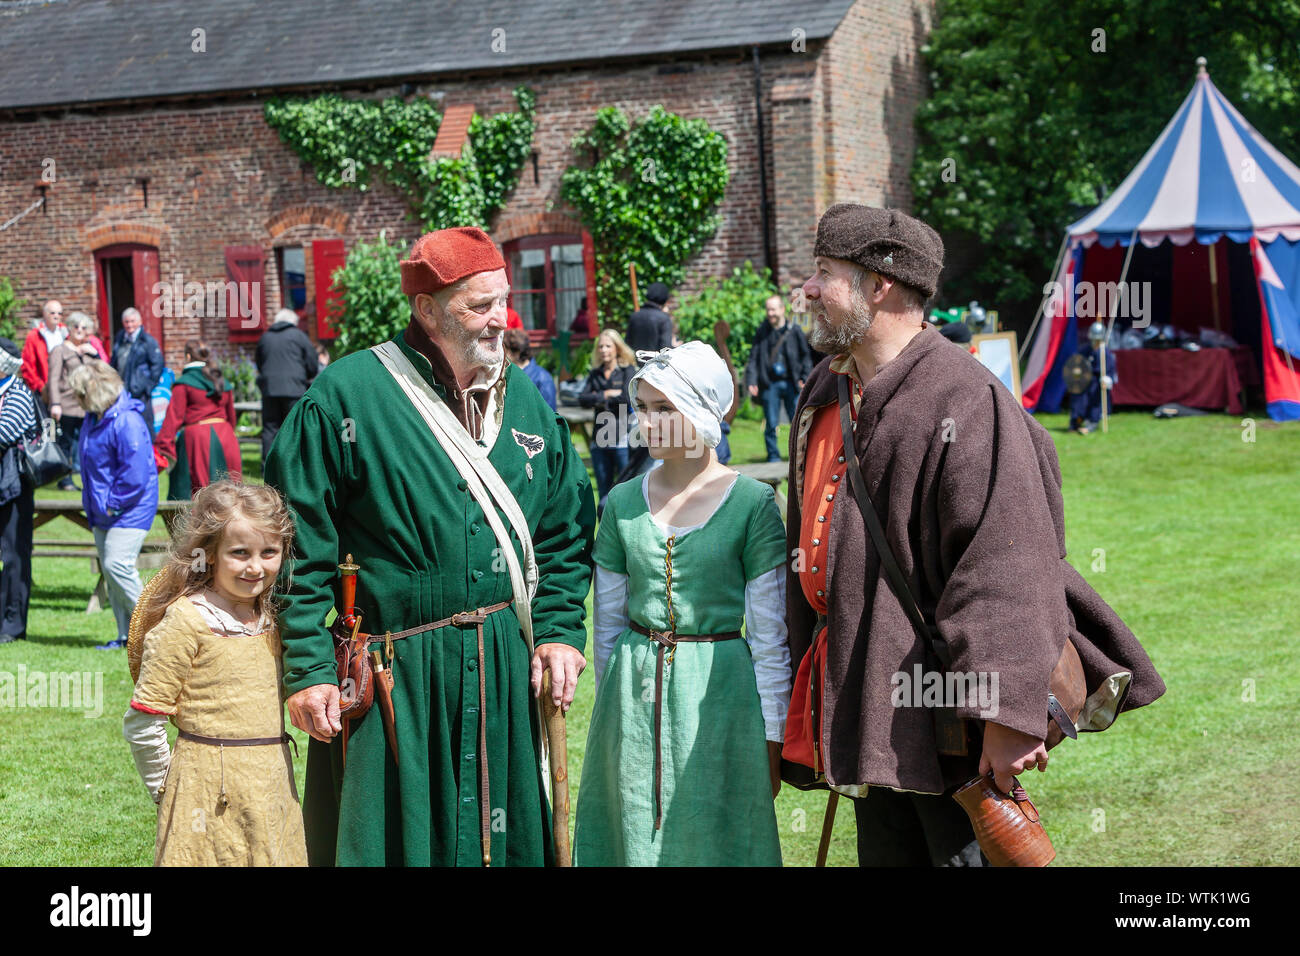 Eine Gruppe von Menschen im mittelalterlichen Kostüm Teilnehmer der mittelalterlichen Fayre in Tatton Park, Knutsford, Cheshire. Stockfoto